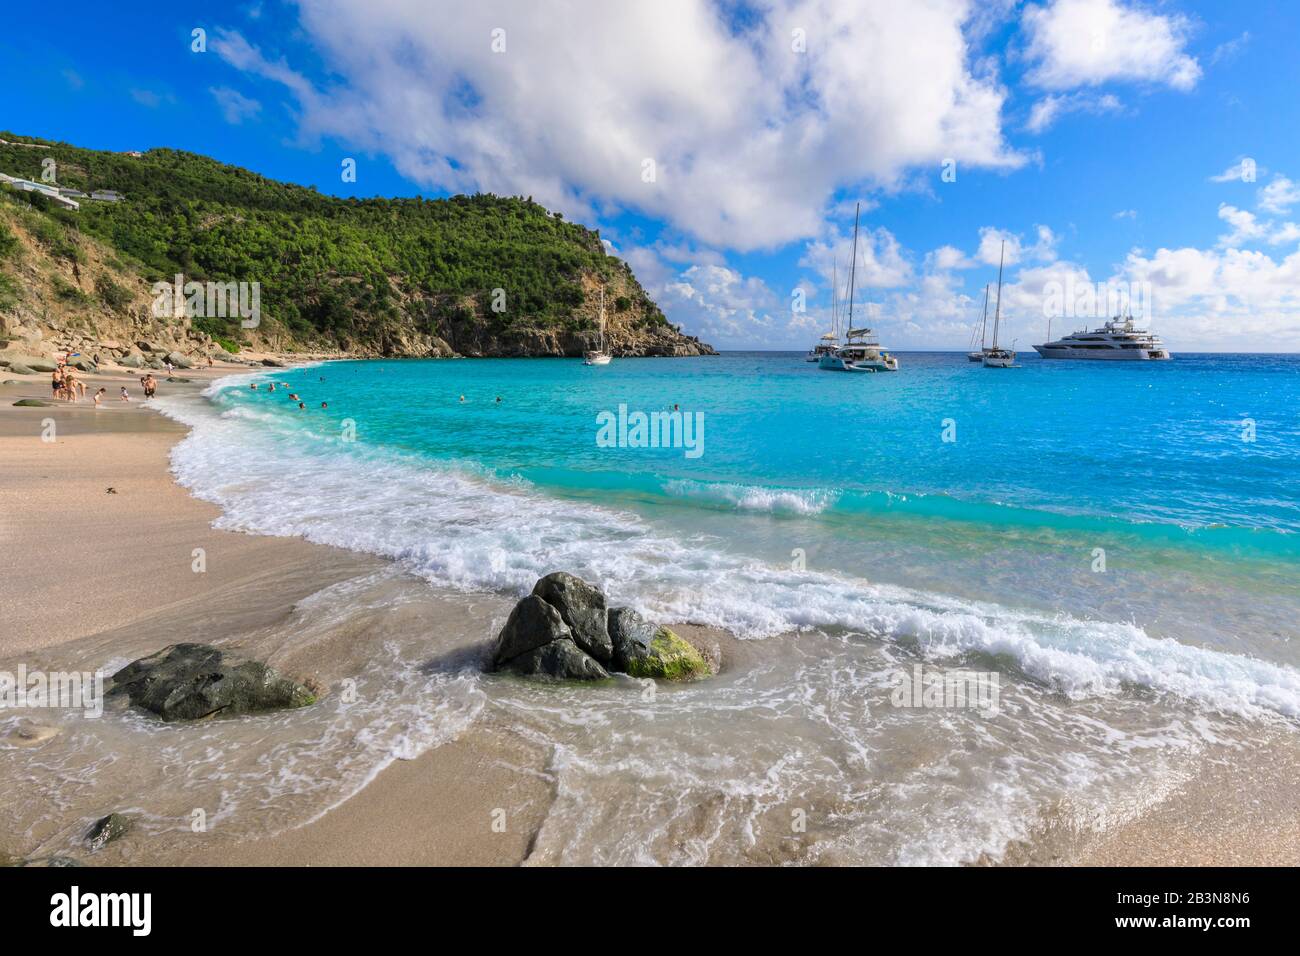 Shell Beach, in der türkisfarbenen Bucht verankerte Jachten, Menschen im Meer, Gustavia, St. Barthelemy (St. Barts) (St. Barth), Westindien, Karibik, Zentralamerika Stockfoto